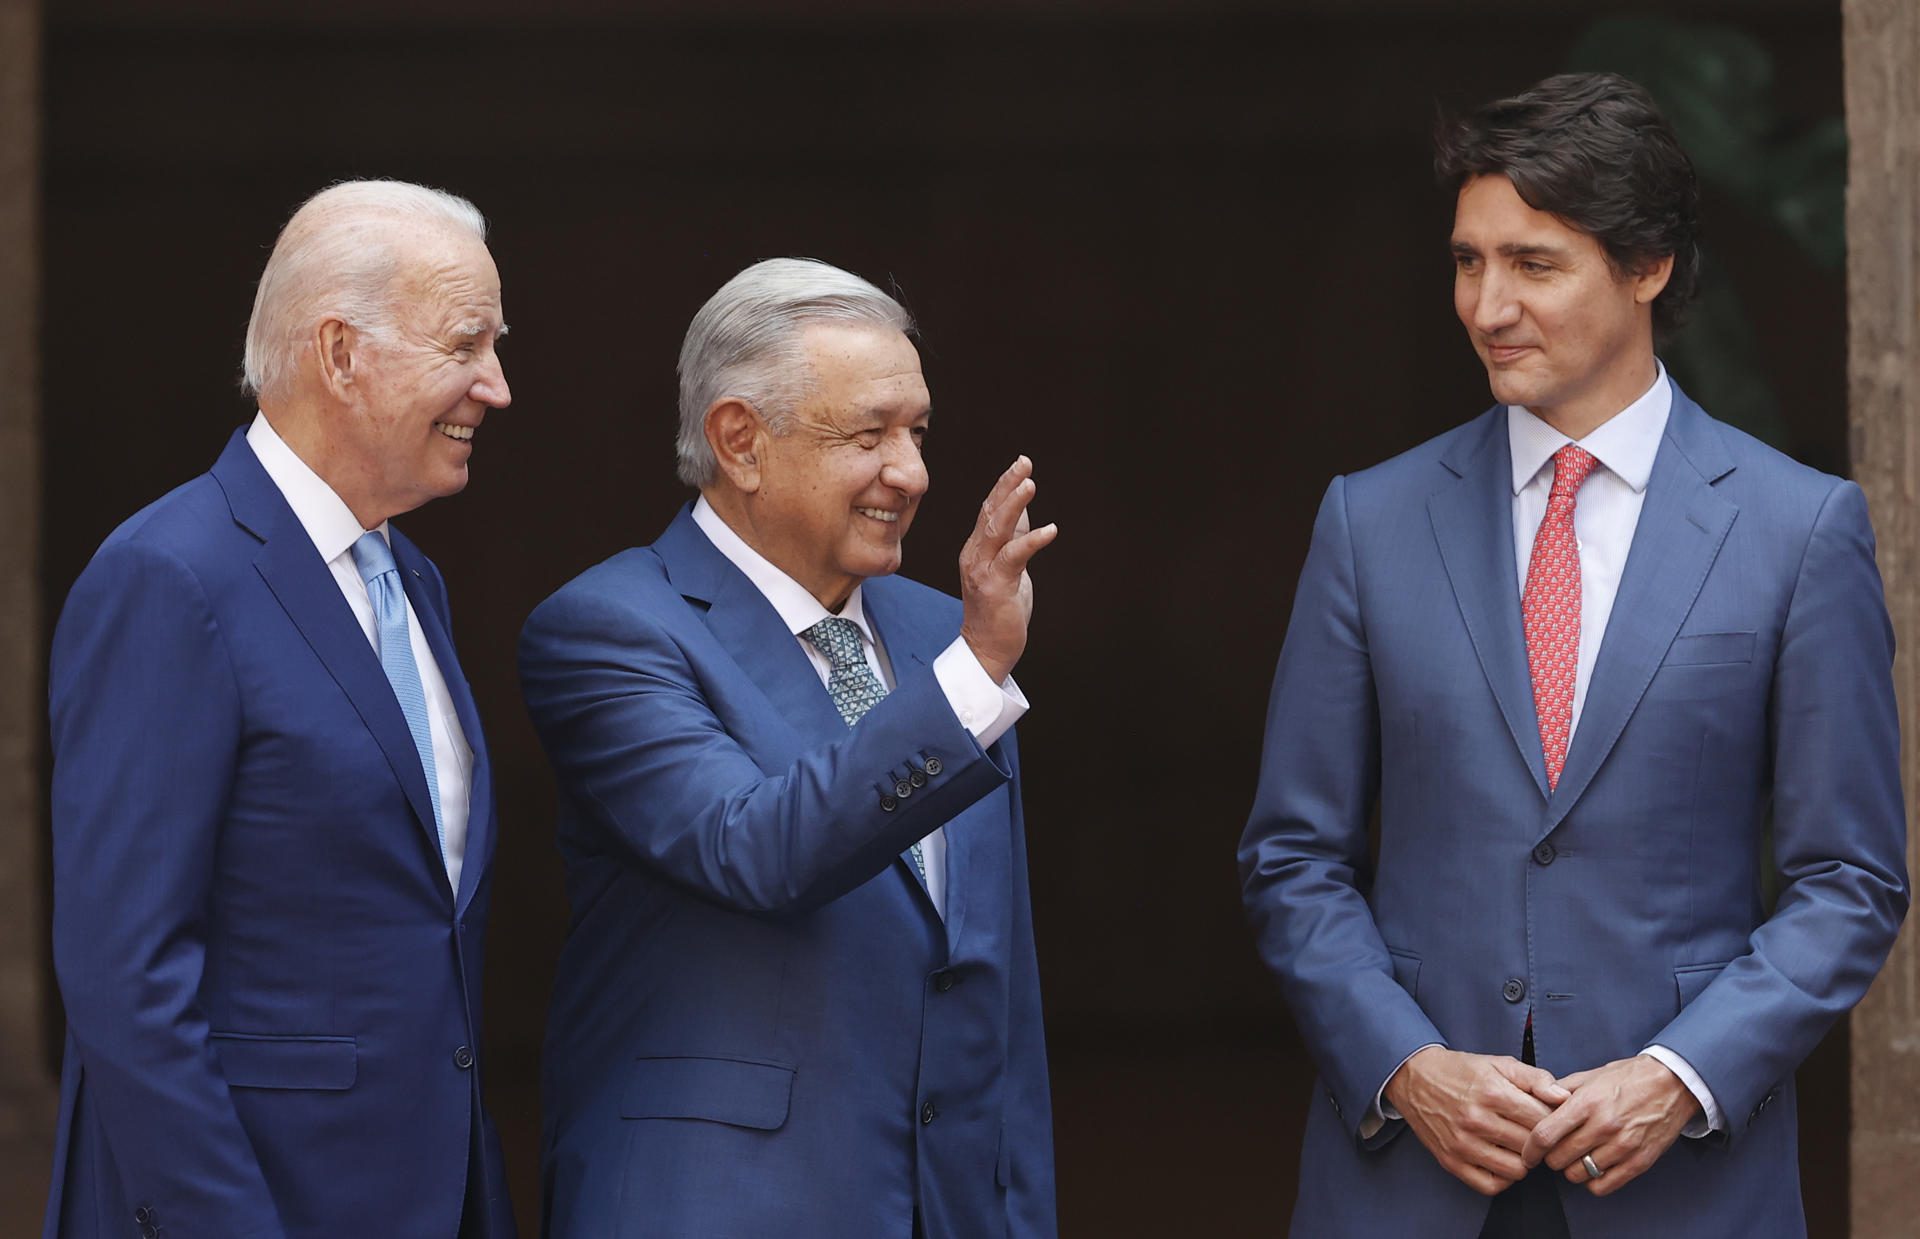 Acuerdos sobre migración acaparan la cumbre “Three Amigos”